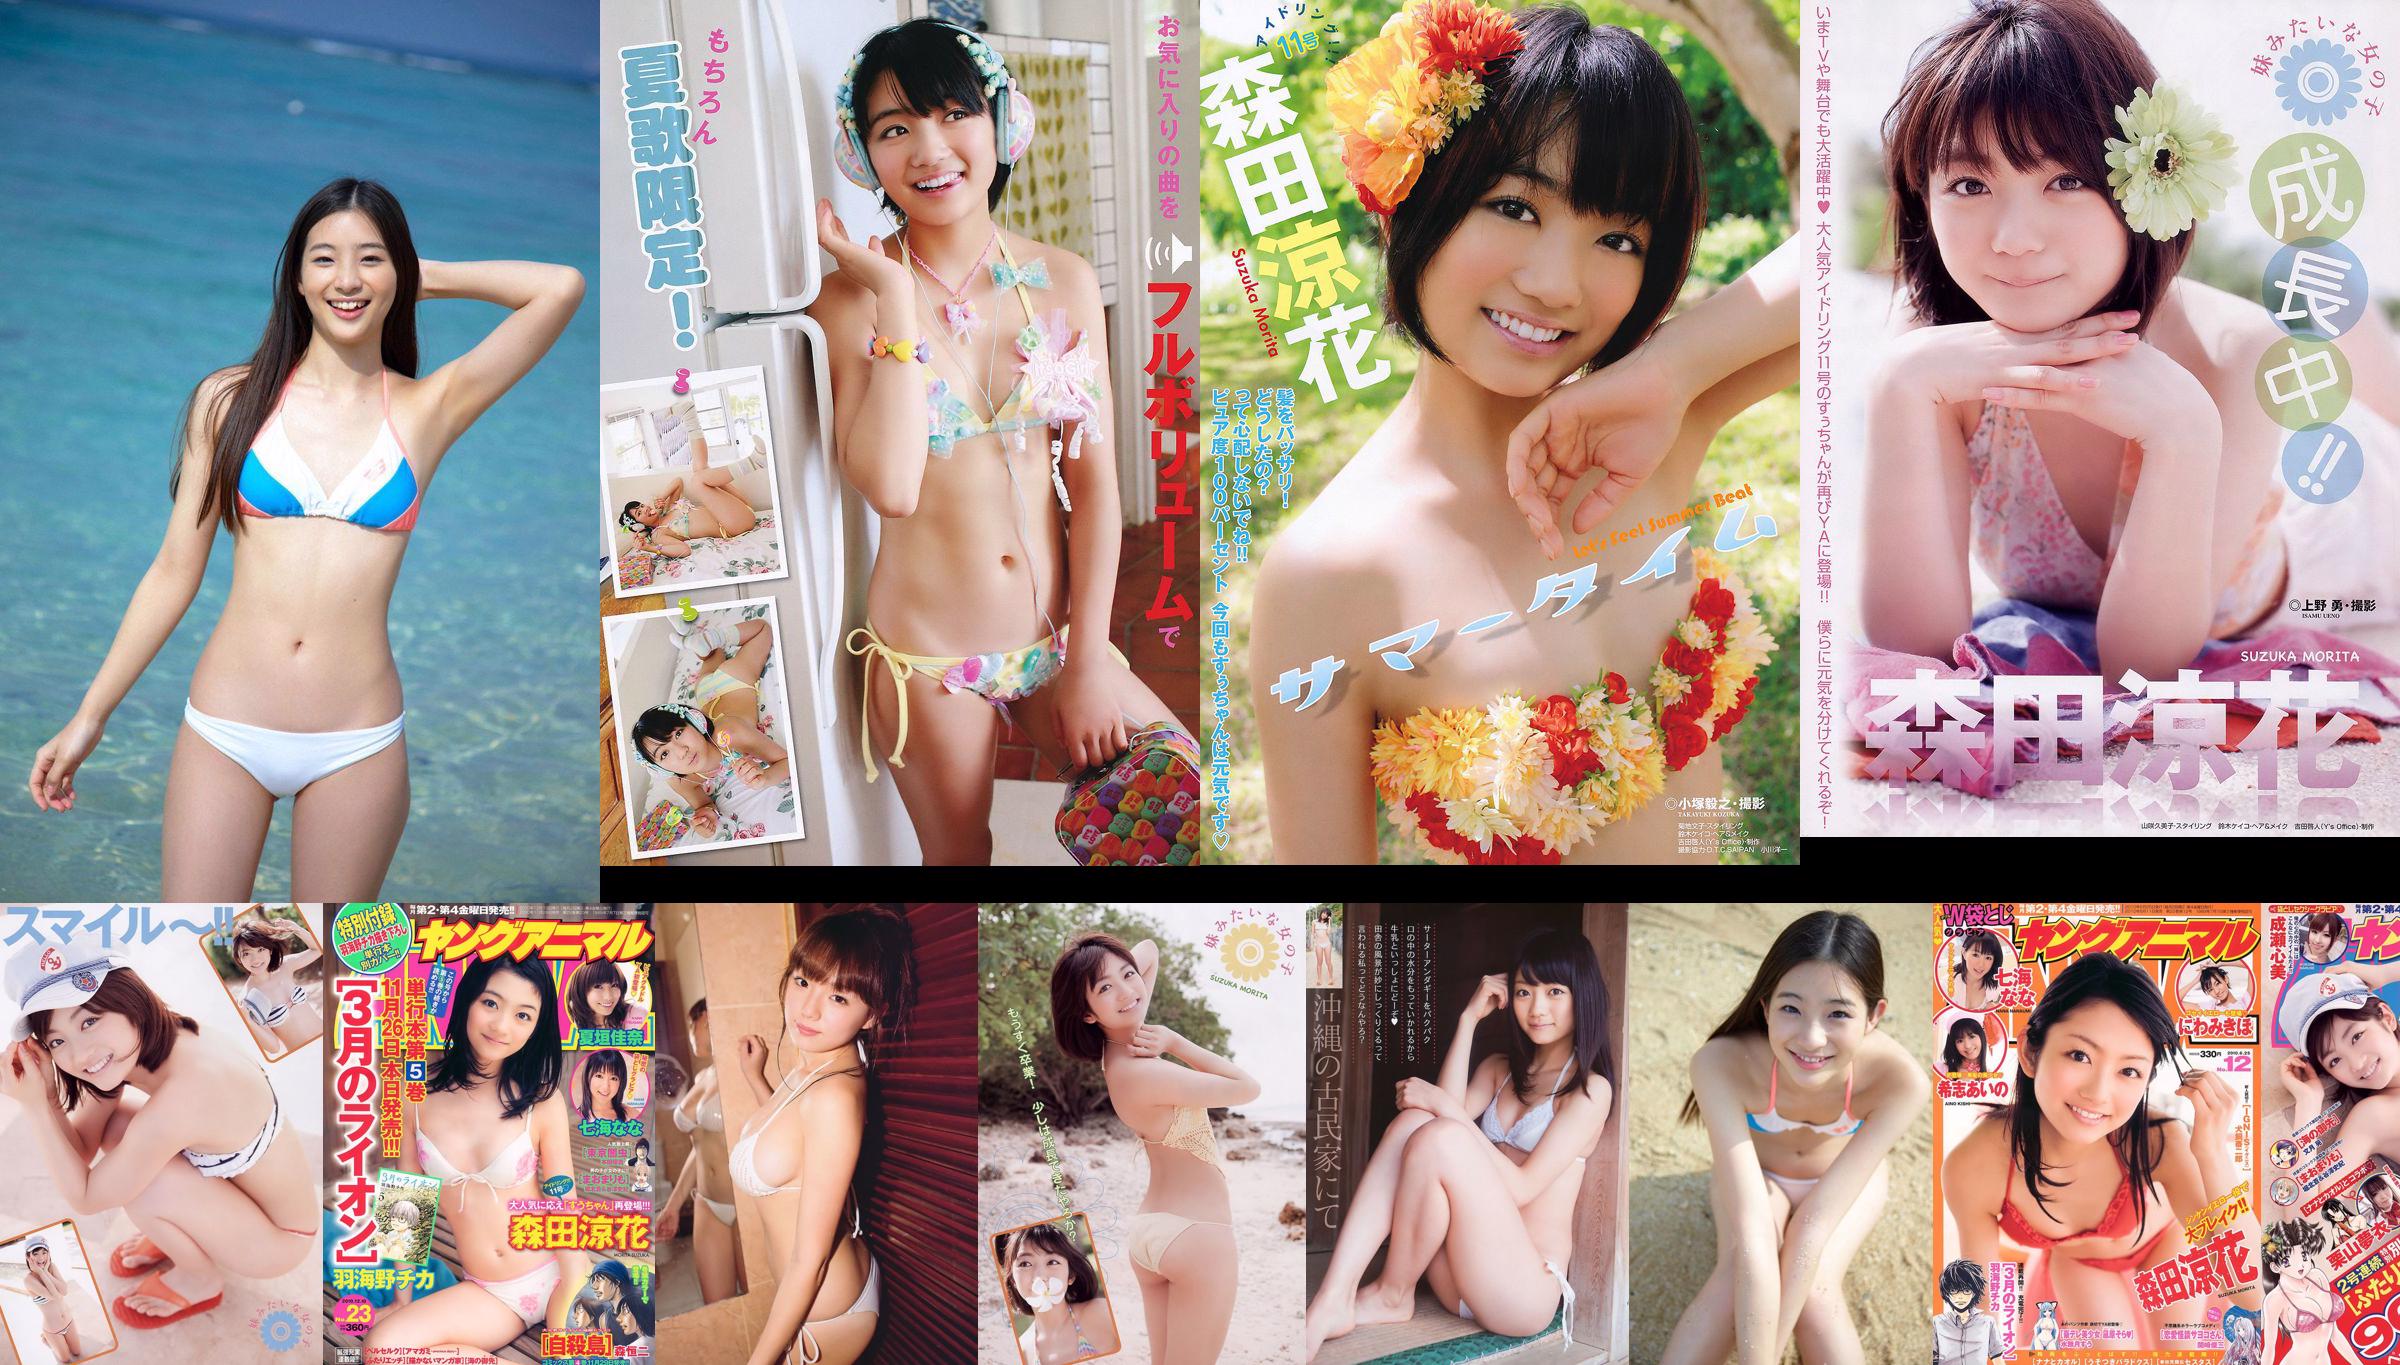 Morita Ryoka Uchida Rio Eiro Chika [Binatang Muda] Majalah Foto No.24 2011 No.c1a113 Halaman 2